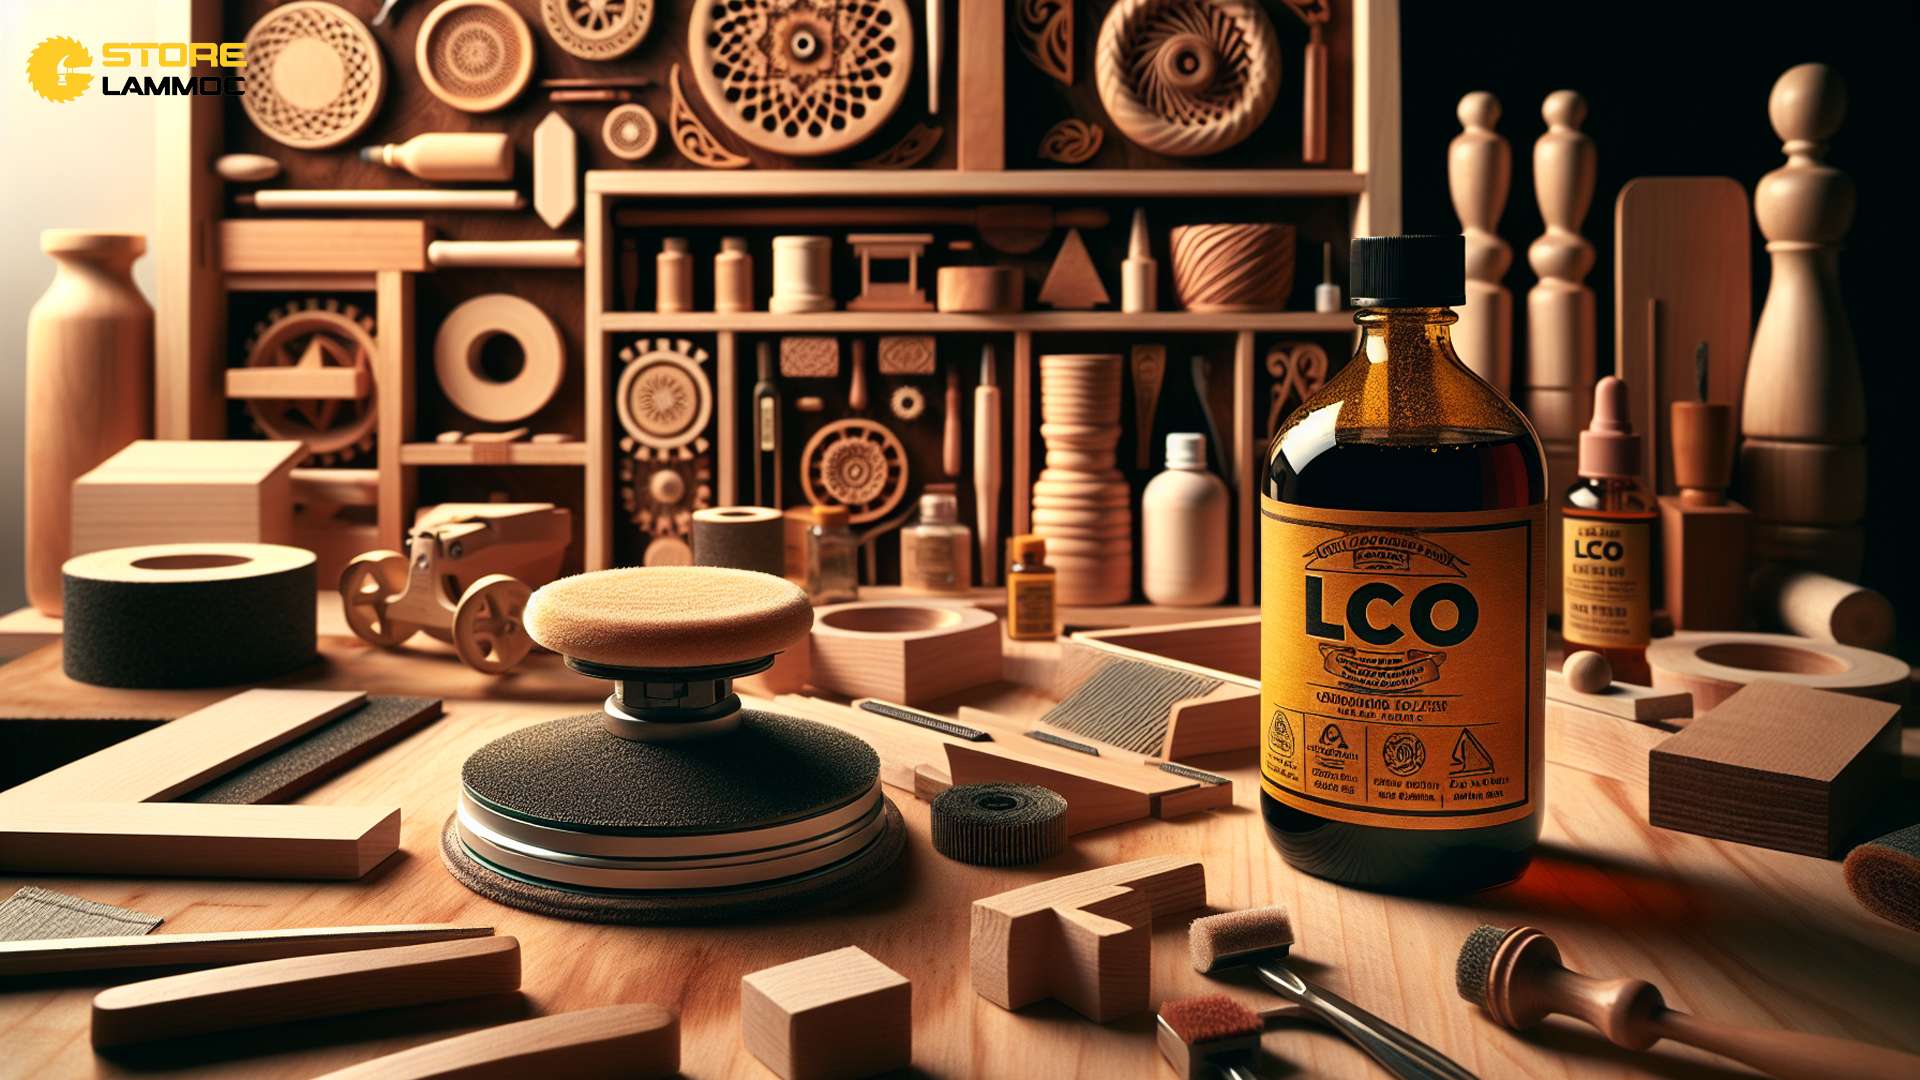 Tạo màu cho gỗ với dầu lau gỗ L.Co: Hướng dẫn và những mẹo hay